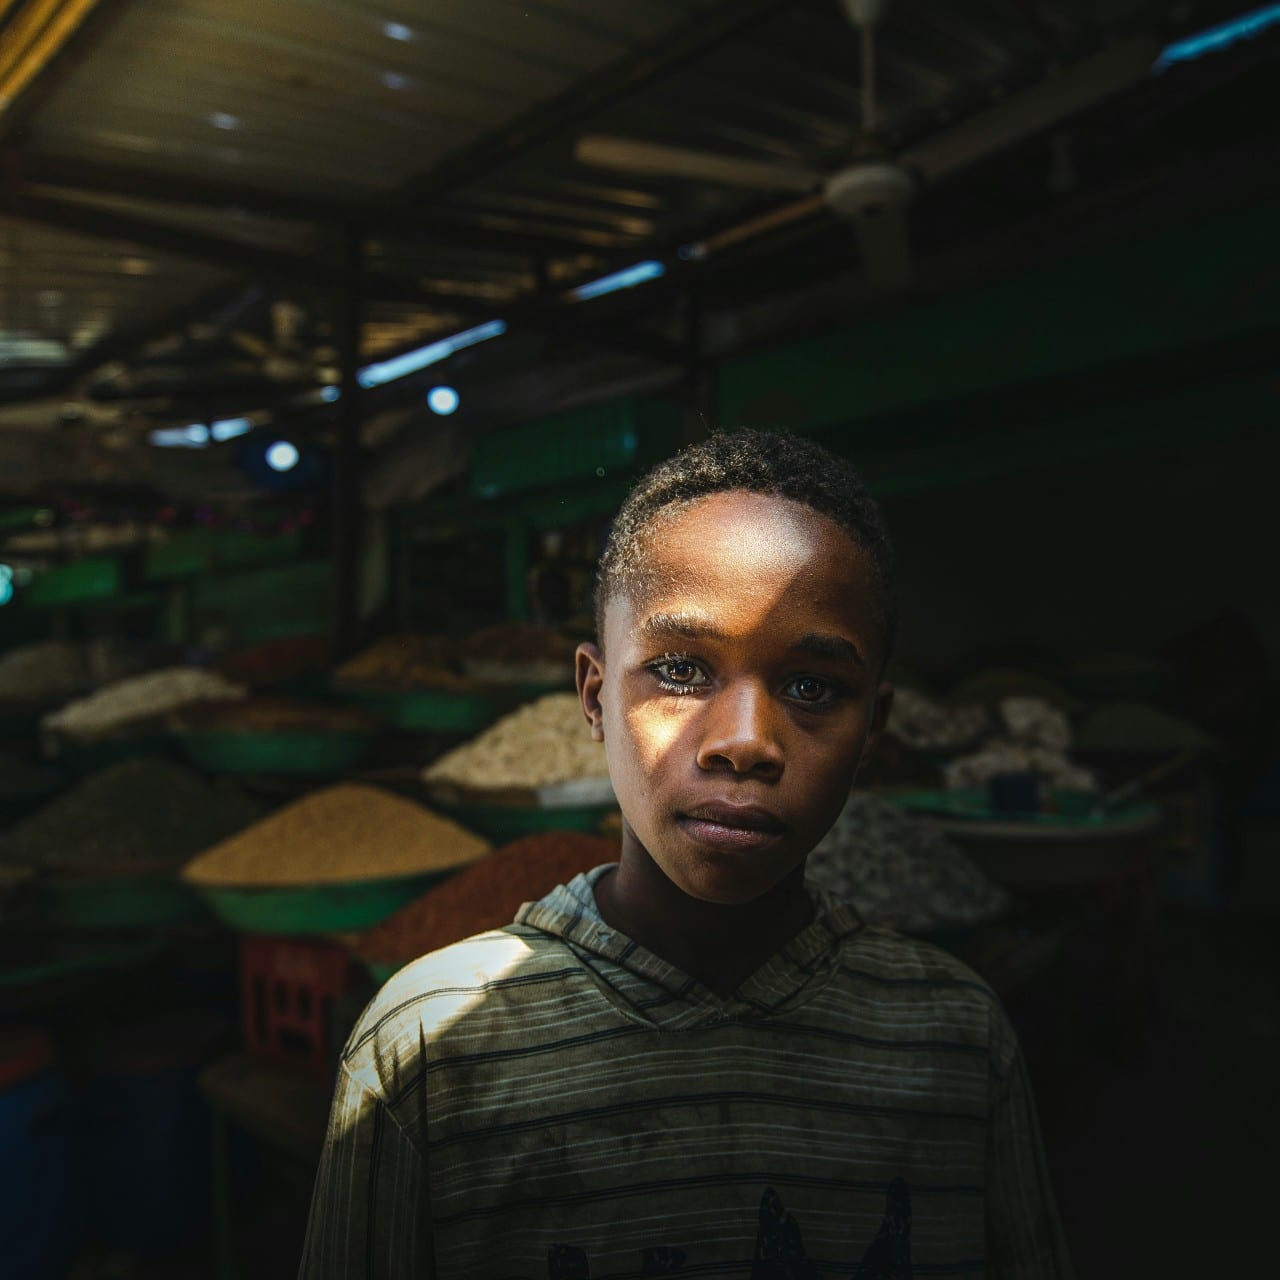 Child at spice market - Khartoum - Sudan. © Abdulaziz Mohammed